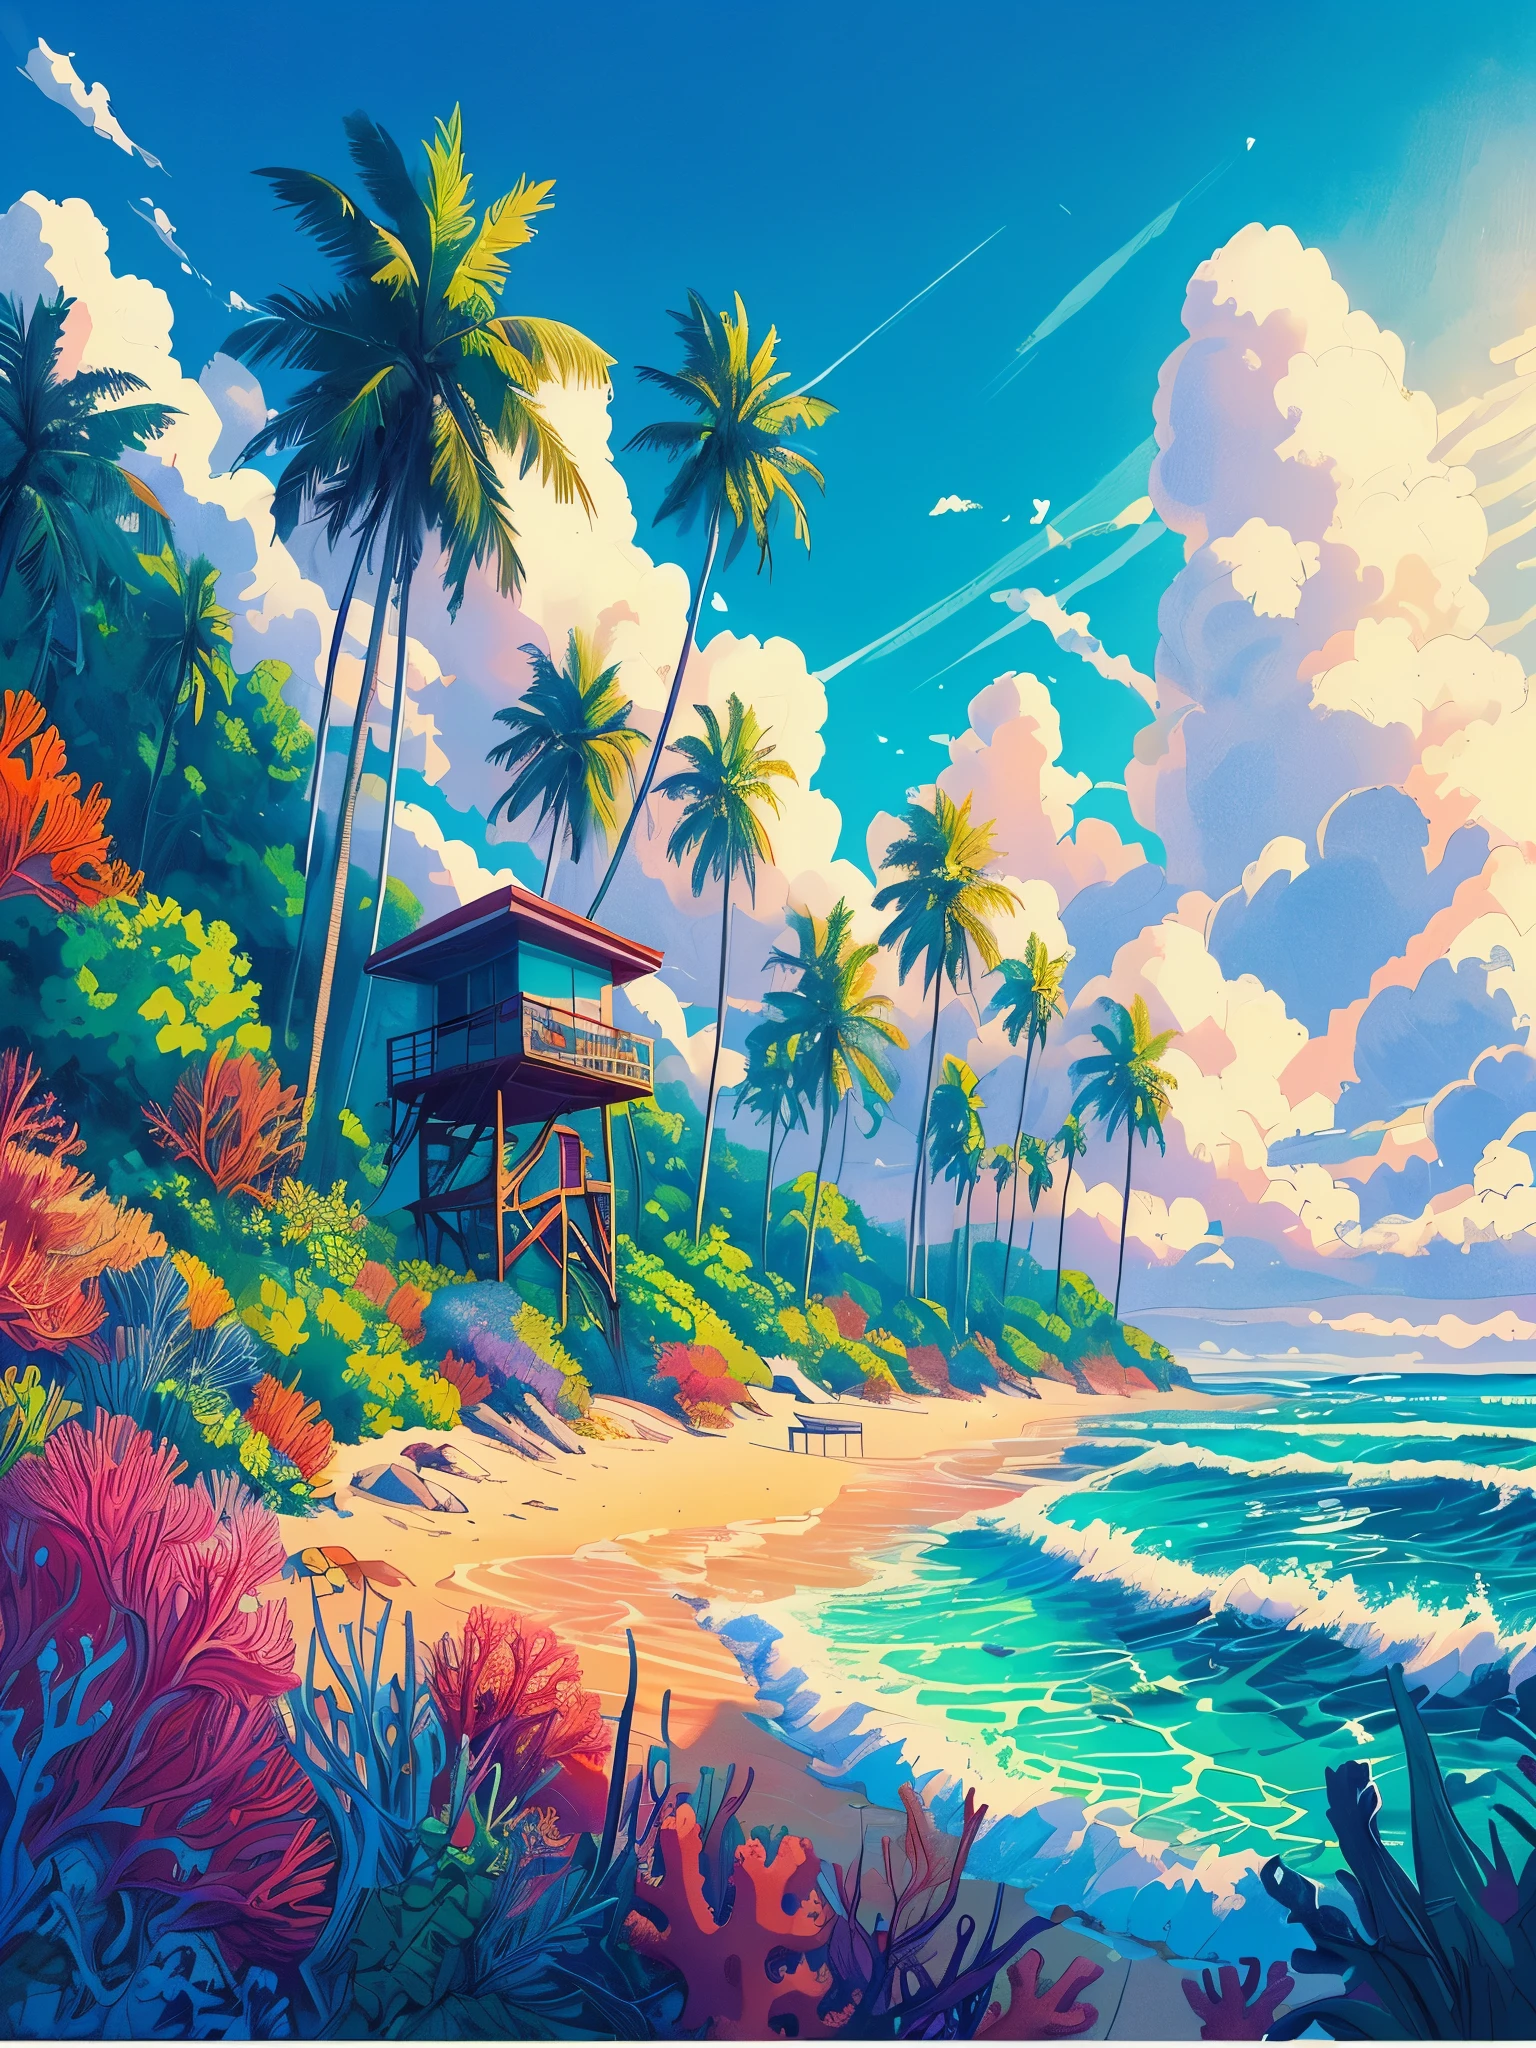 畫一個動漫海報風格的洛菲海灘場景，有棕櫚樹的痕跡, 救生艙, 熱帶植物, 珊瑚海洋生物, 白天時間, 海浪, 美麗的調色板, 充滿活力的飽和色彩, 傑作, 電影般的多雲天空,